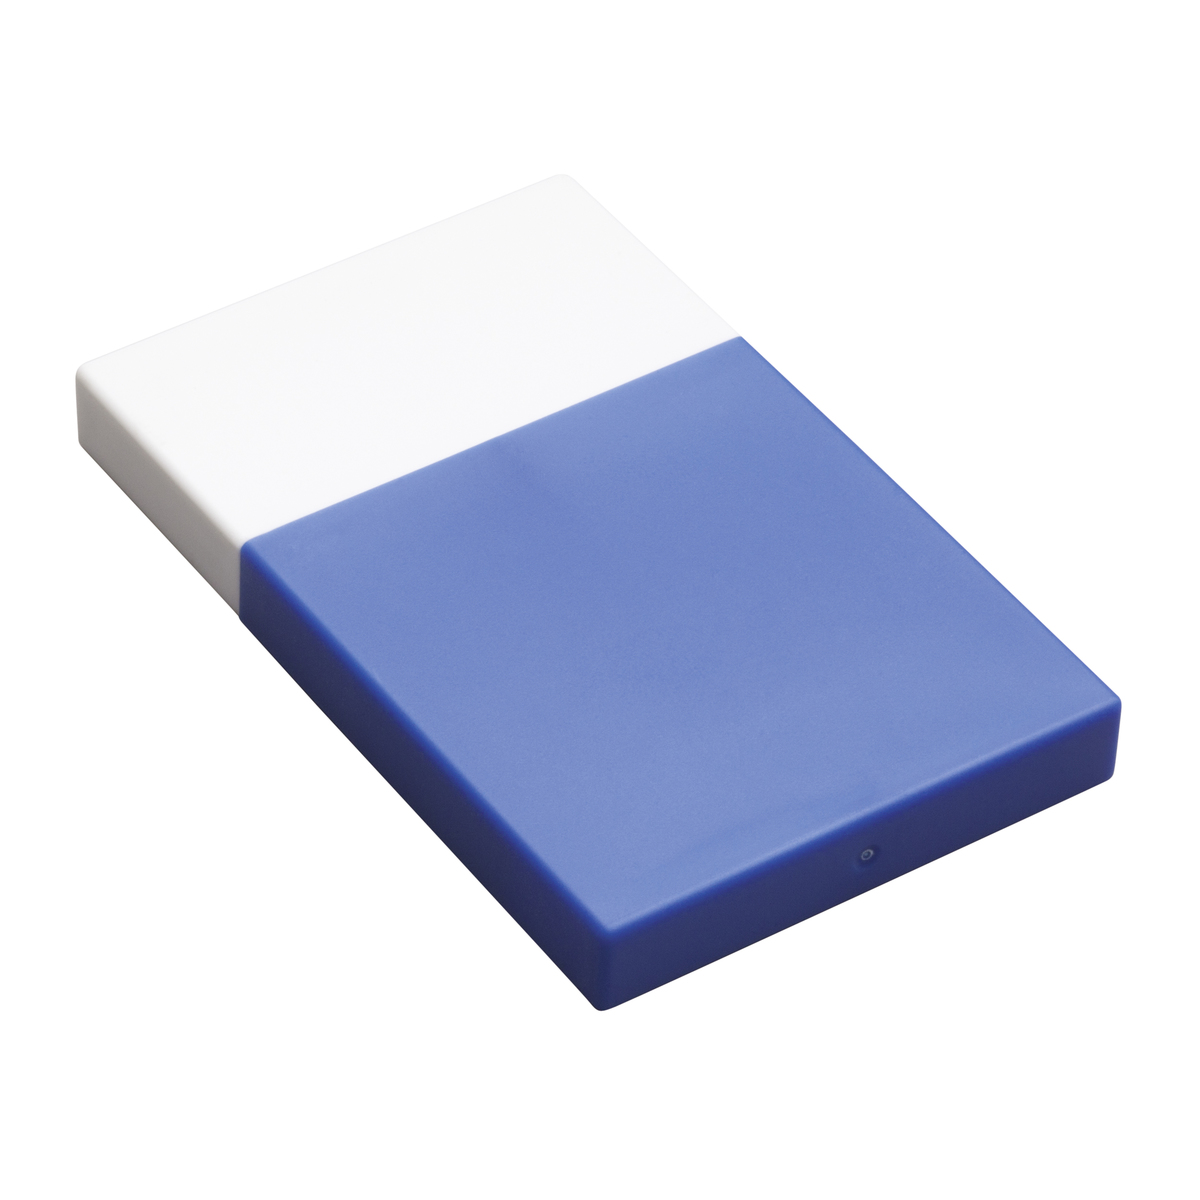 LM Visitenkartenbox REFLECTS-KELMIS WHITE BLUE blau, weiß, weiß/blau